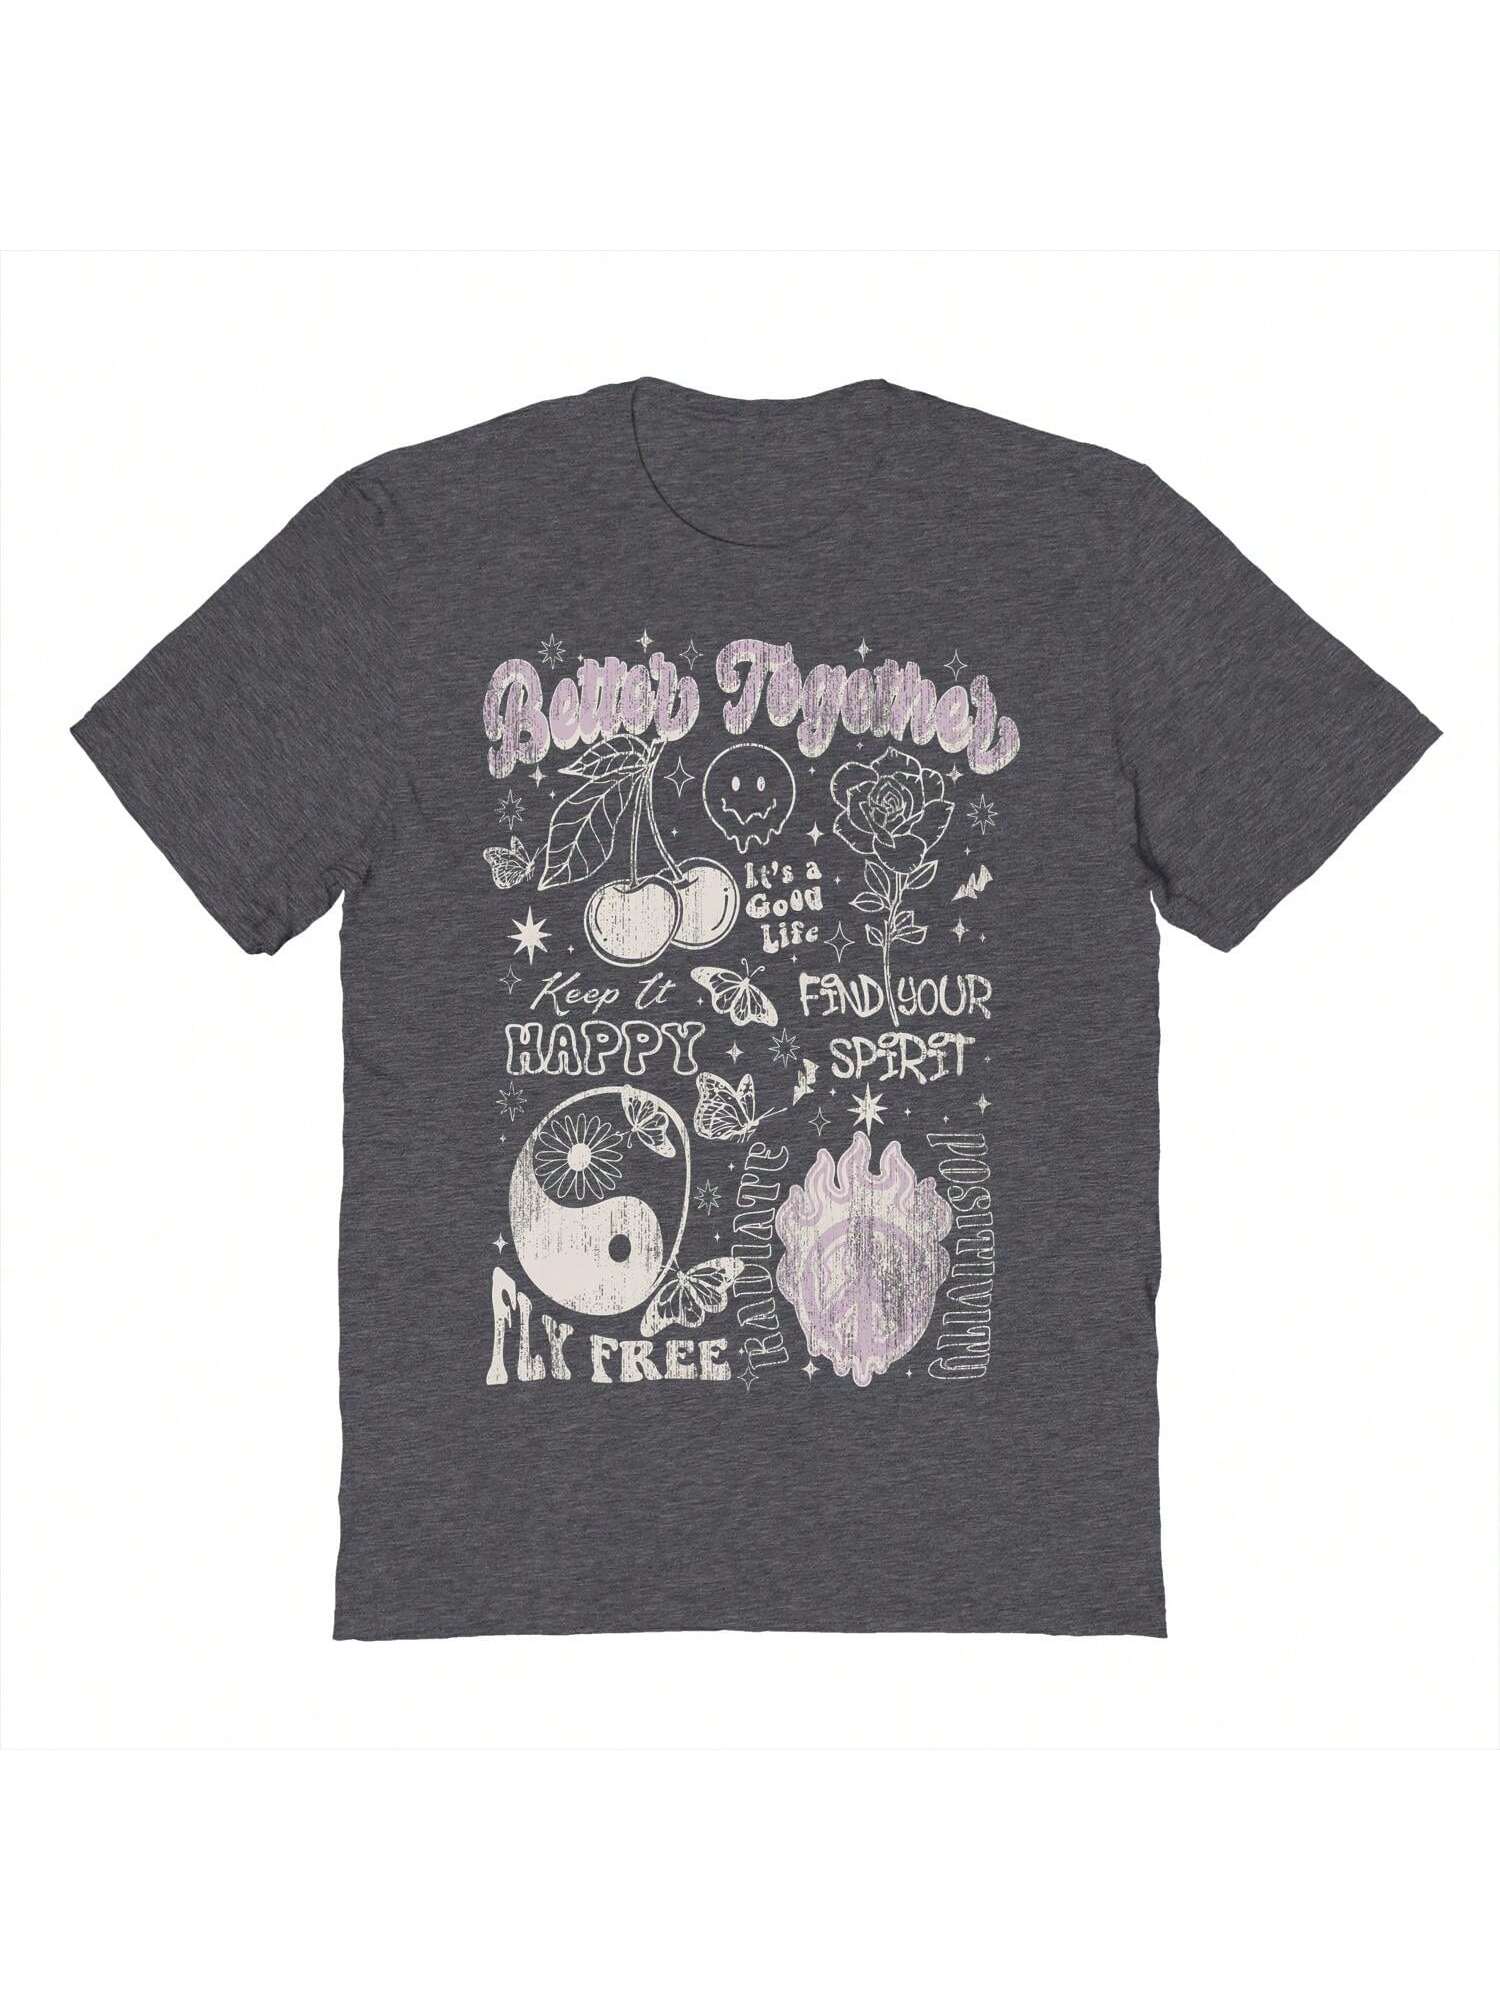 Хлопковая футболка унисекс с короткими рукавами «Почти лучше вместе» с рисунком, темно-серый